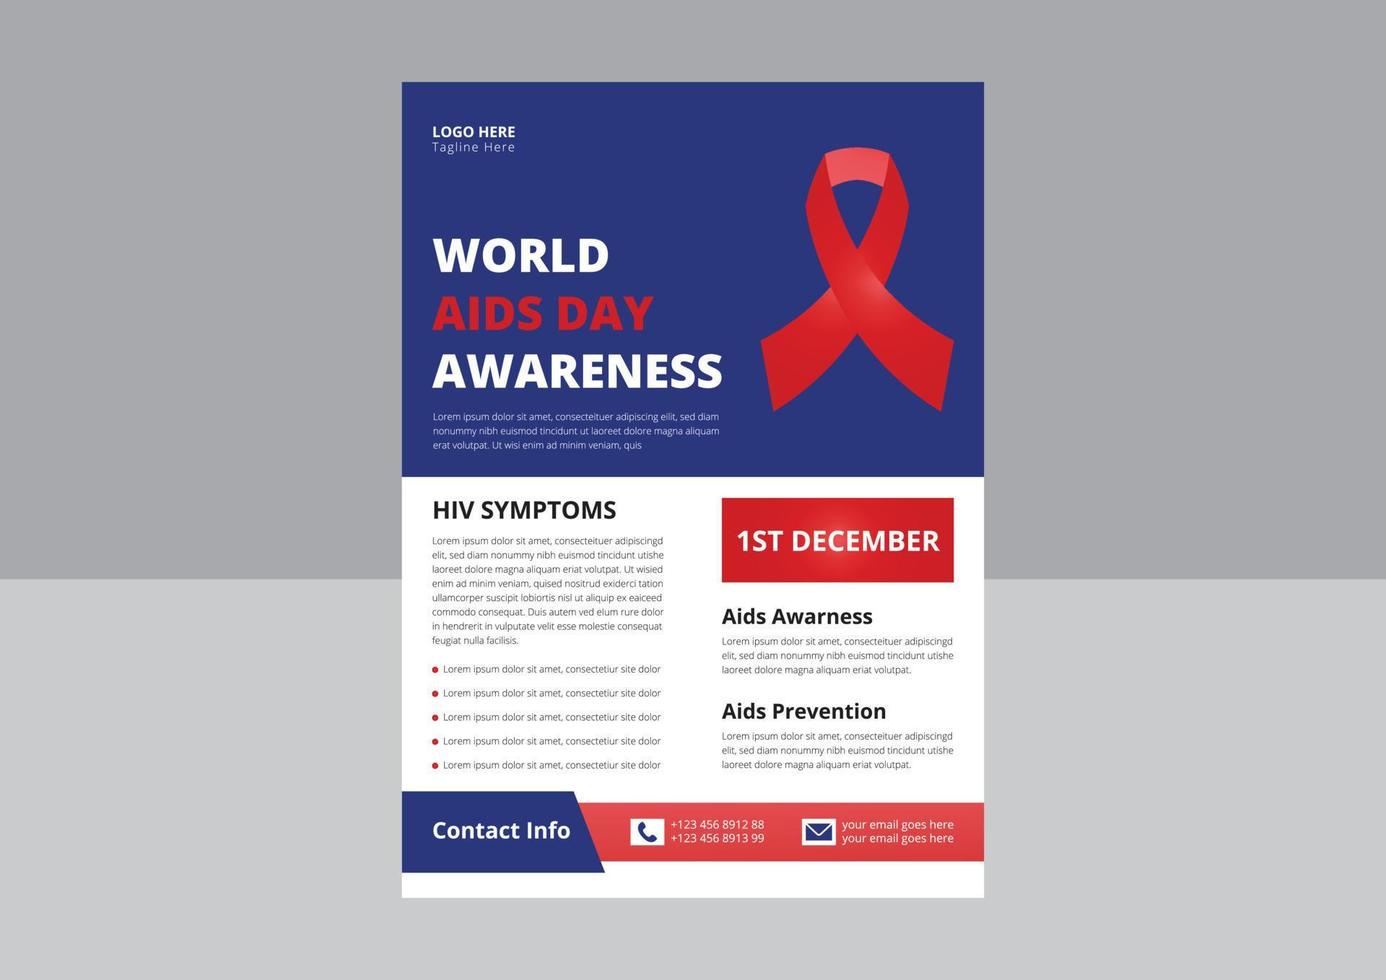 welt-aids-tag oder hiv-virus-poster oder flyer-design-vorlage. flyerdesign zur hiv- oder aids-prävention. Cover, Poster, A4-Format, Flyer-Design. vektor